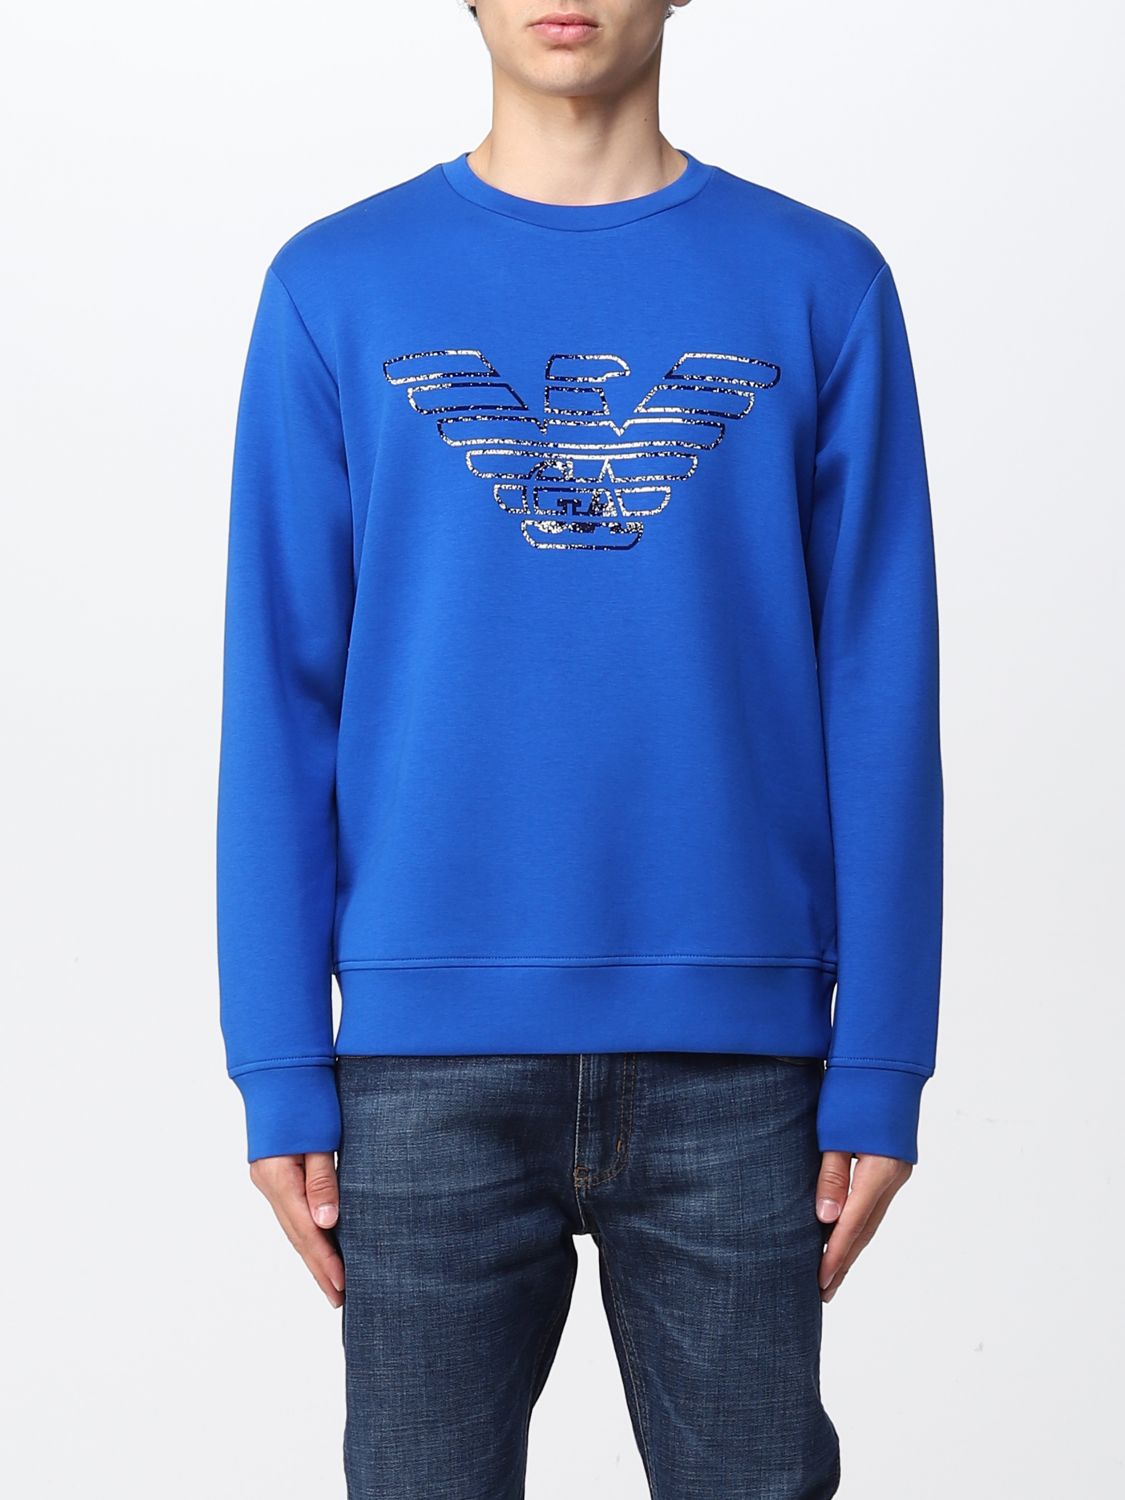 EMPORIO ARMANI: sweatshirt in cotton blend - Royal Blue | Emporio ...